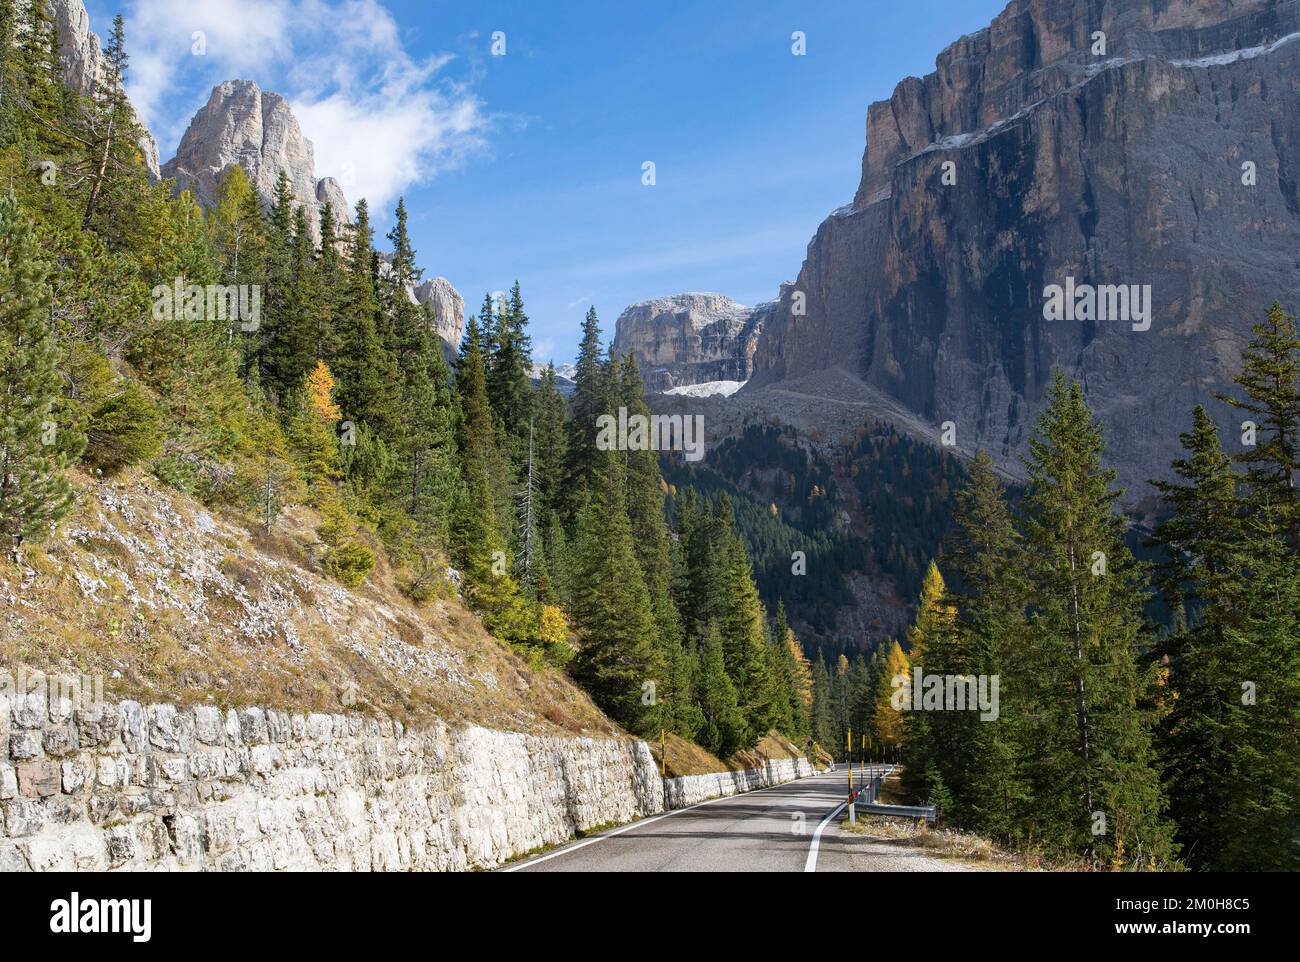 Italy, Trentino Alto Adige region, Dolomites, Selva, Gardena and Badia valley, Sella massif Stock Photo